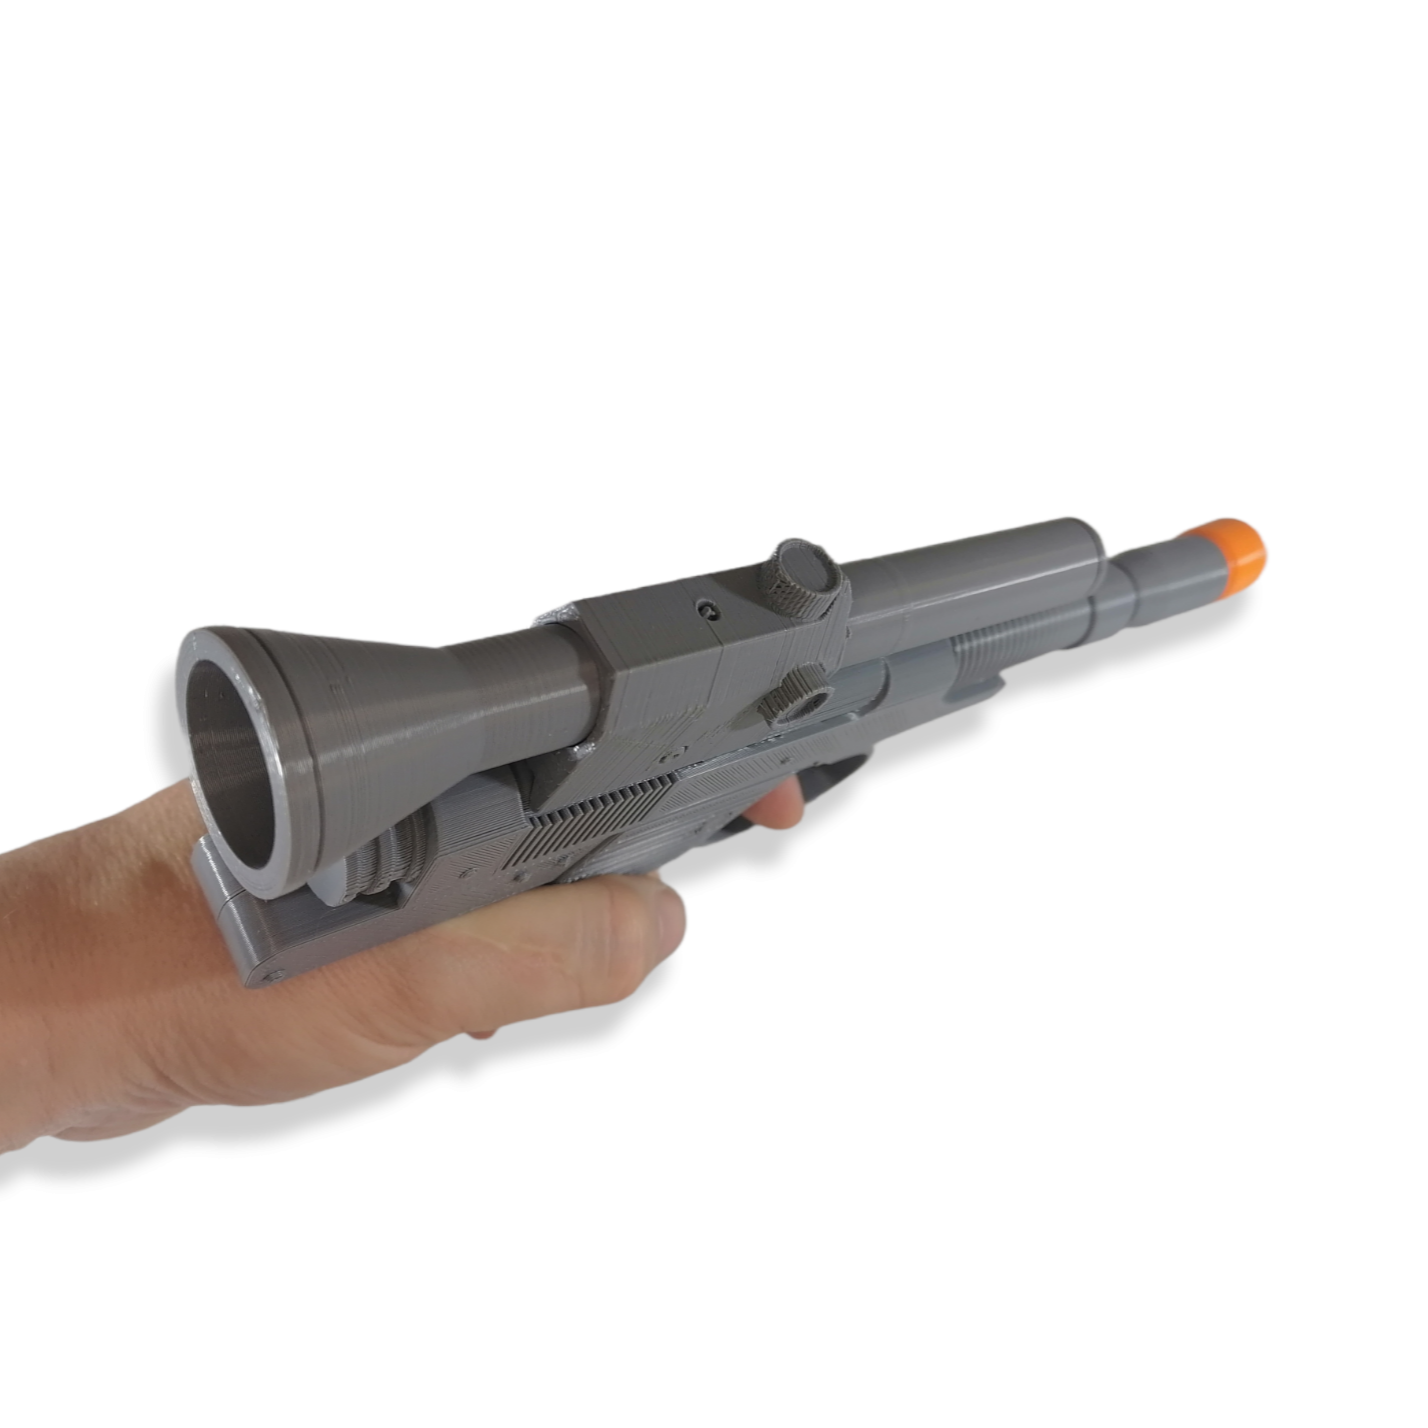 CARA - Sci-Fi Blaster - 3D Printed Replica